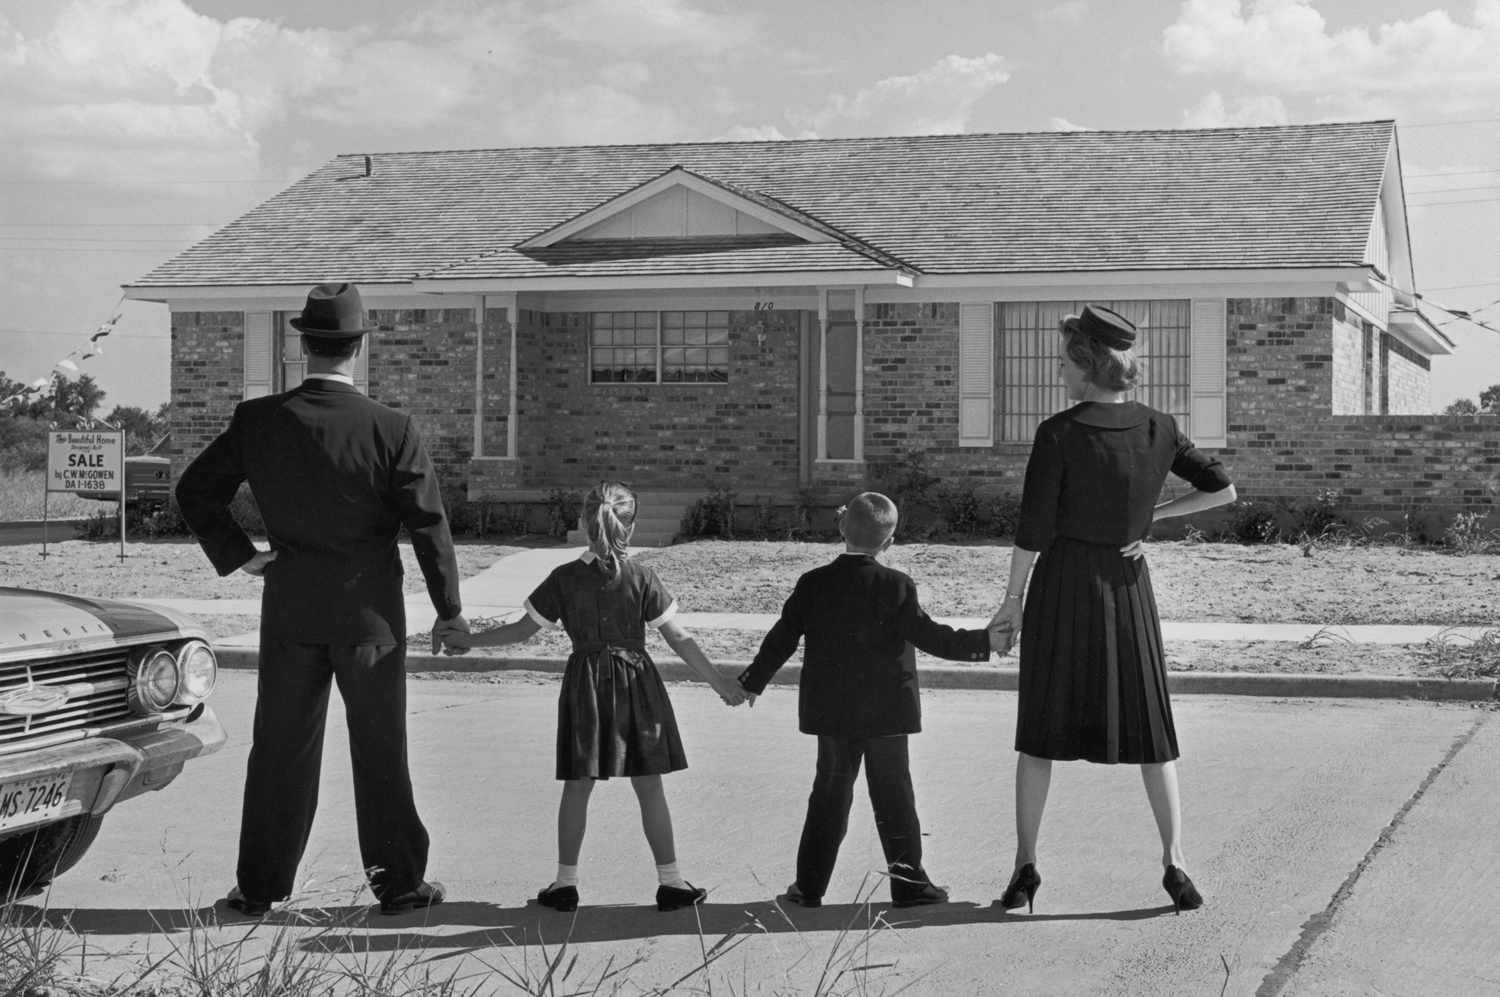 Imagen de una familia de cuatro miembros cogidos de la mano mientras permanecen en fila de espaldas a la cámara, frente a una casa estilo rancho en una urbanización suburbana. En el patio delantero de la casa hay un cartel de venta